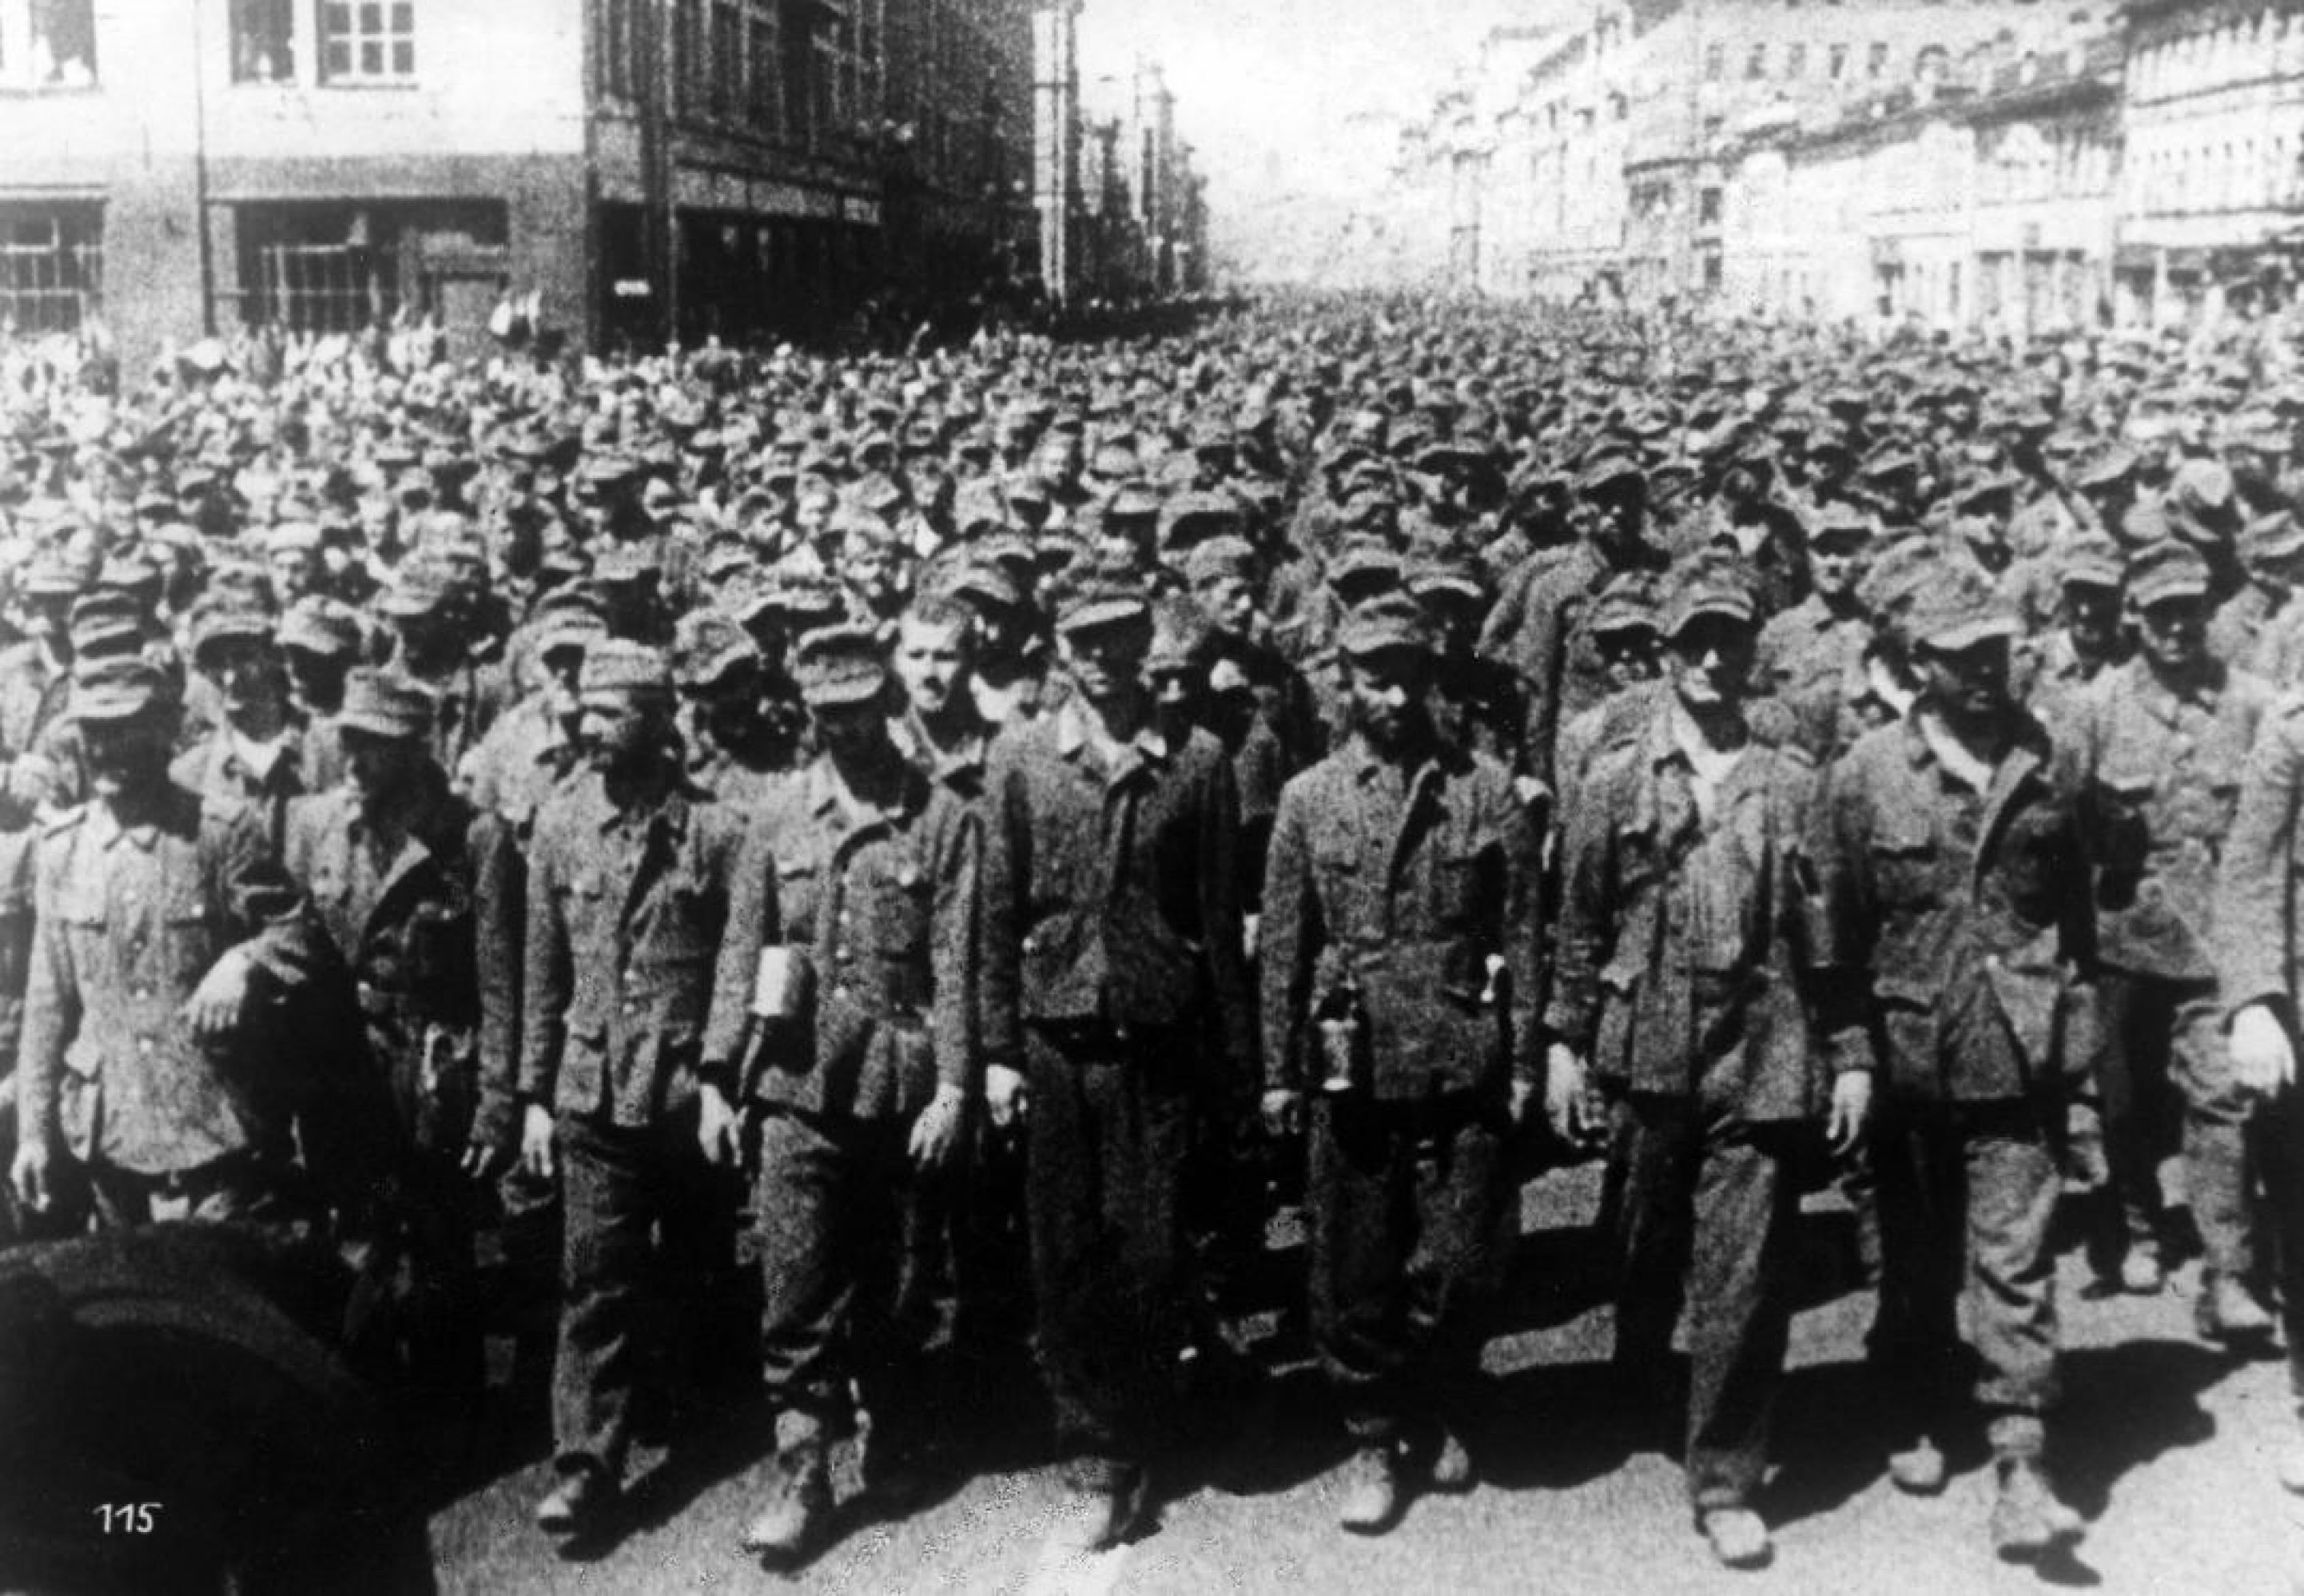 Ein altes Foto in schwarz-weiß zeigt eine endlose Menge an deutschen Soldaten ohne Waffen, die auf einer breiten Straße zwischen Häusern laufen.